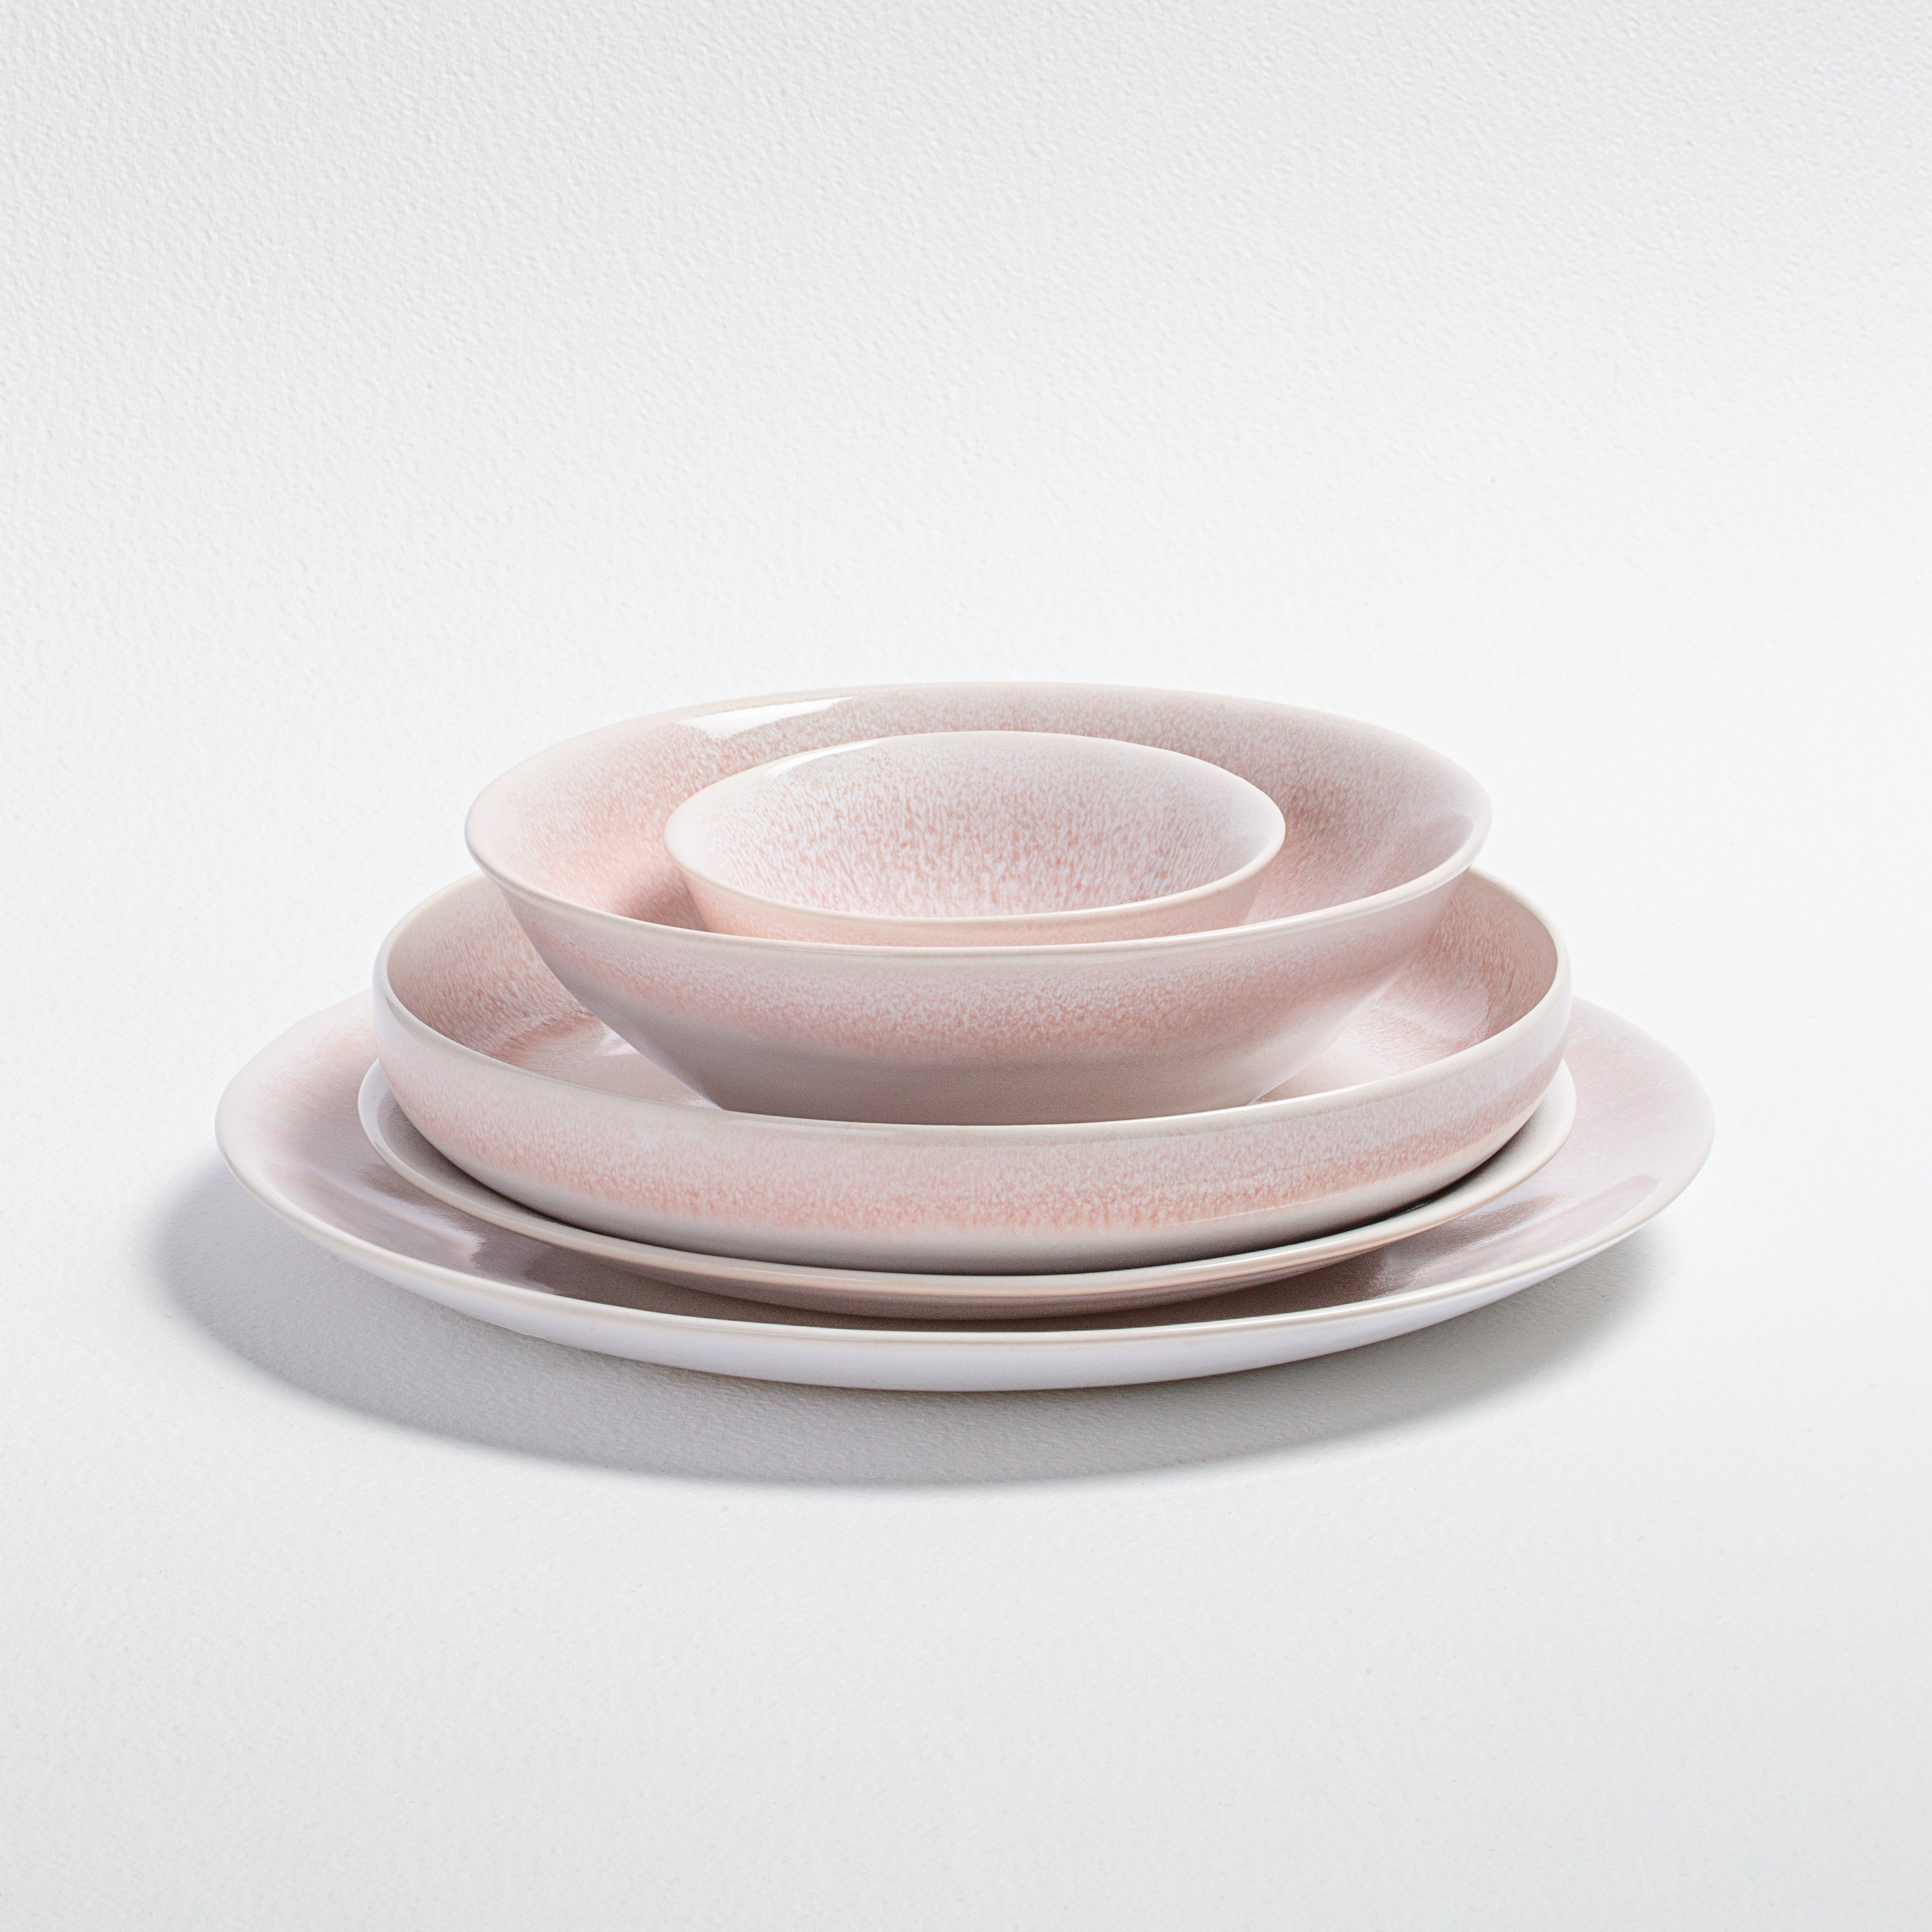 Reflections Copenhagen Madeira set of 2 dinner plates (27cm) - Pink